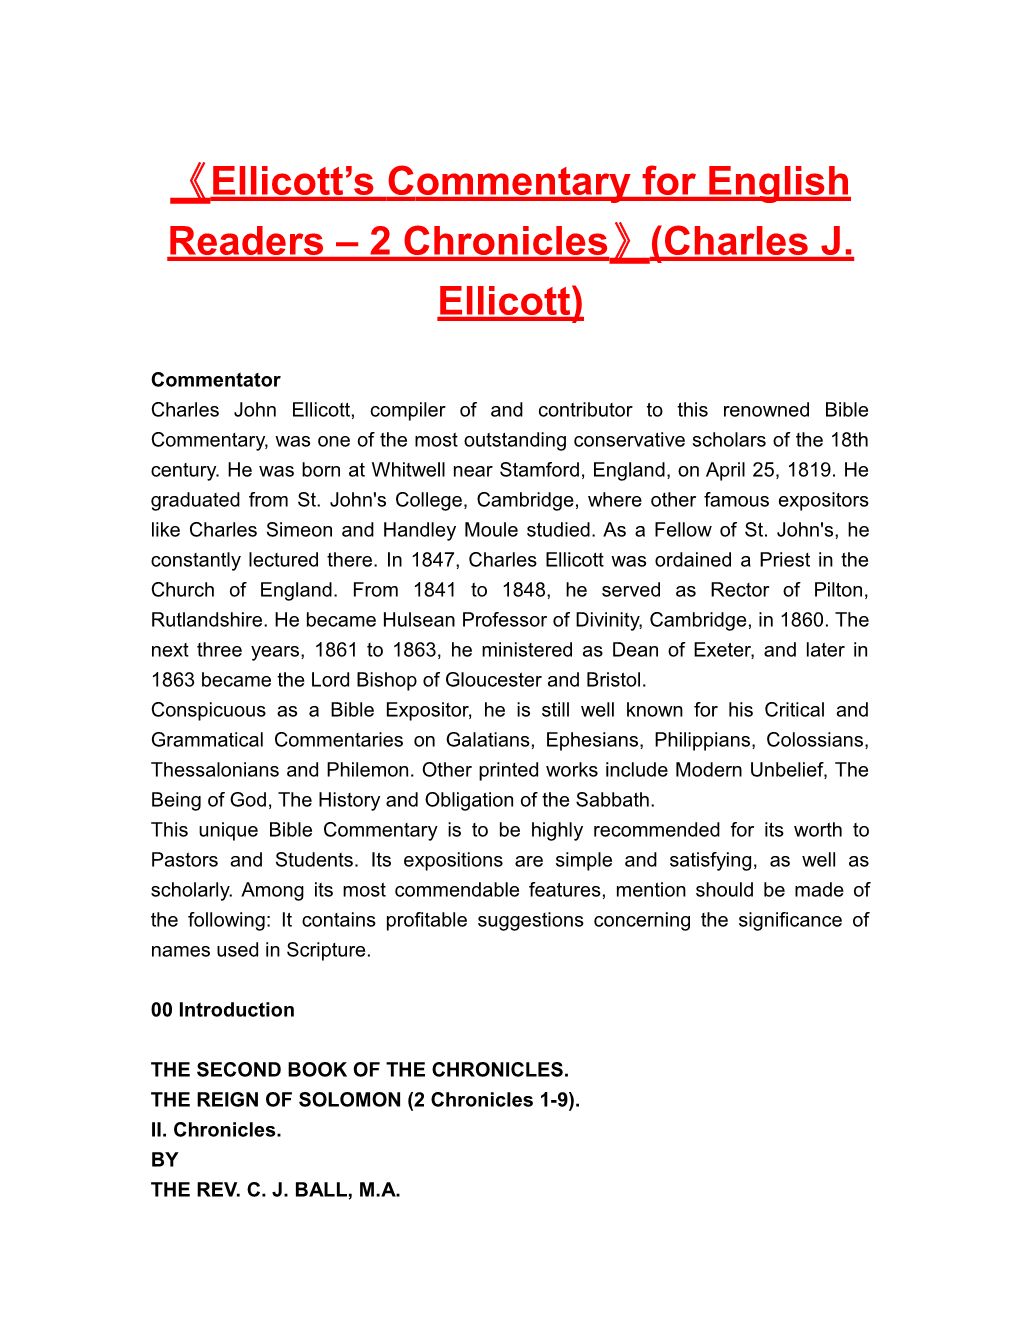 Ellicott Scommentary for English Readers 2 Chronicles (Charles J. Ellicott)